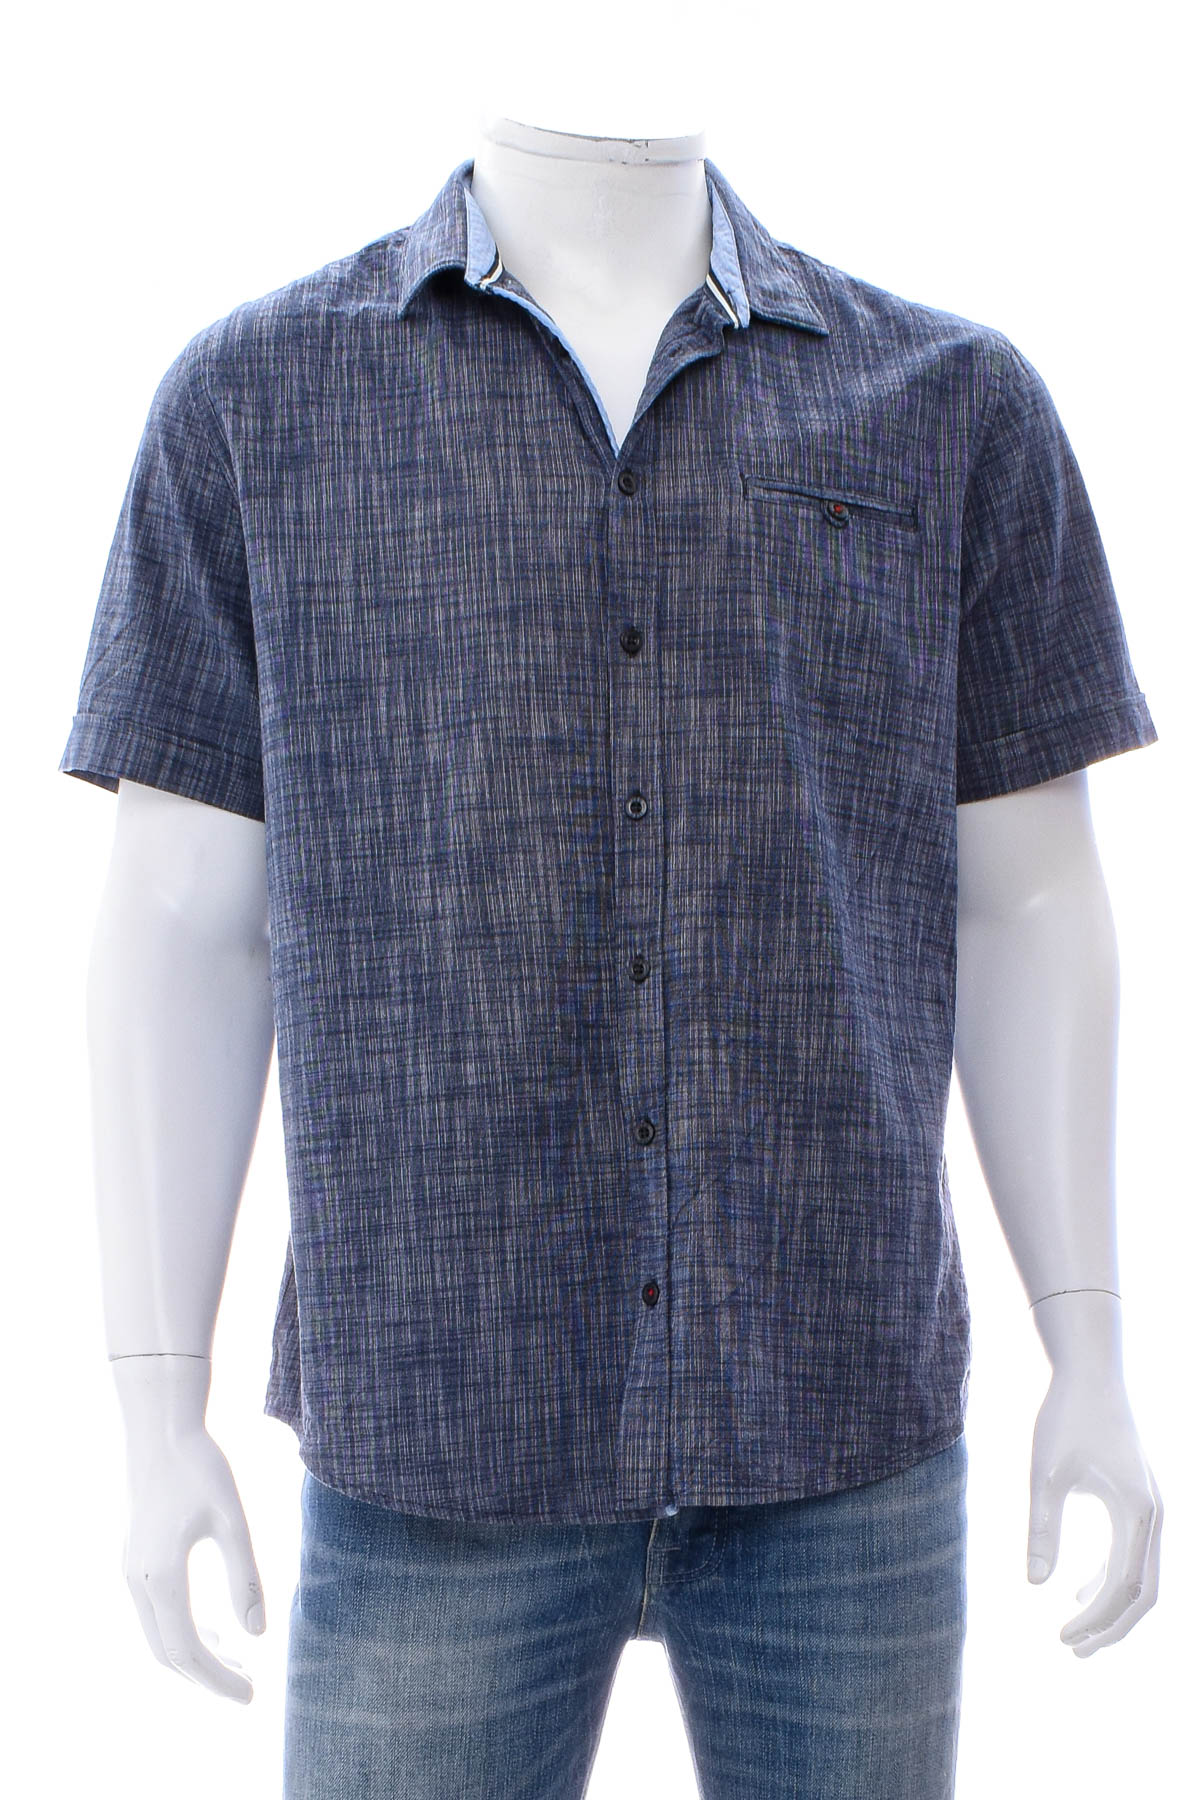 Men's shirt - IVEO by jbc - 0